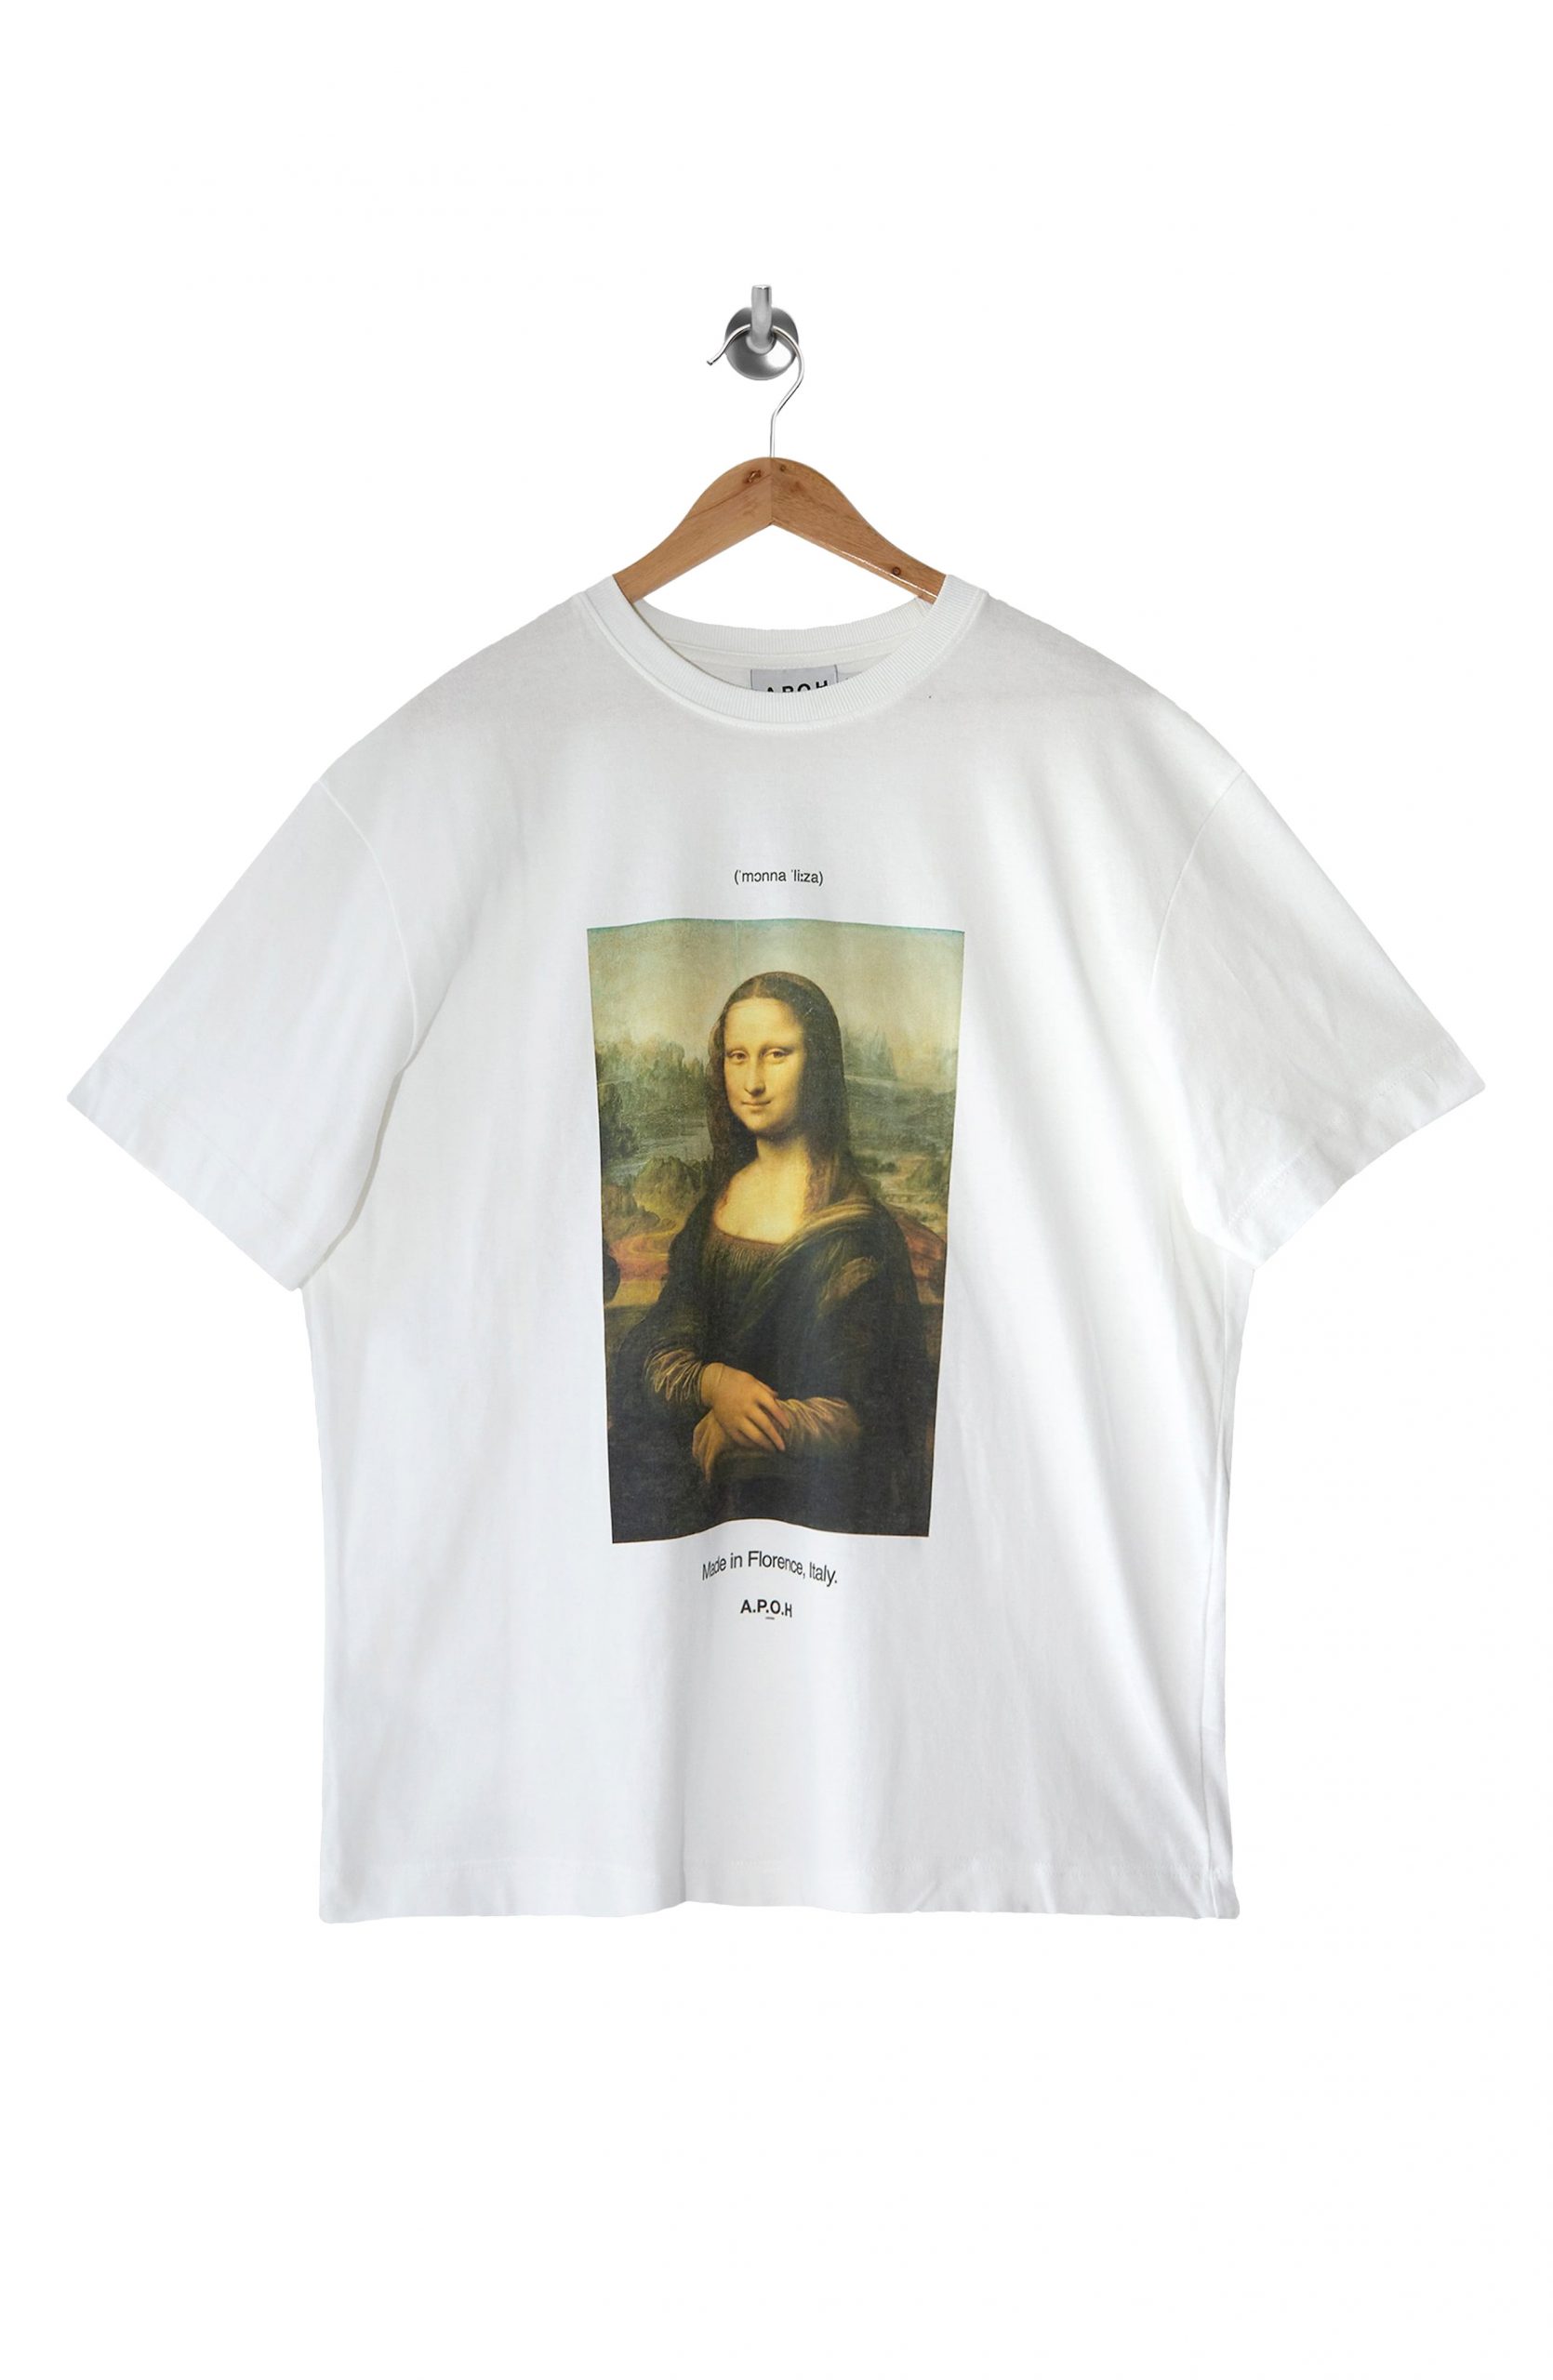 Men’s Topman Mona Lisa Graphic Tee, Size Large - White | The Fashionisto